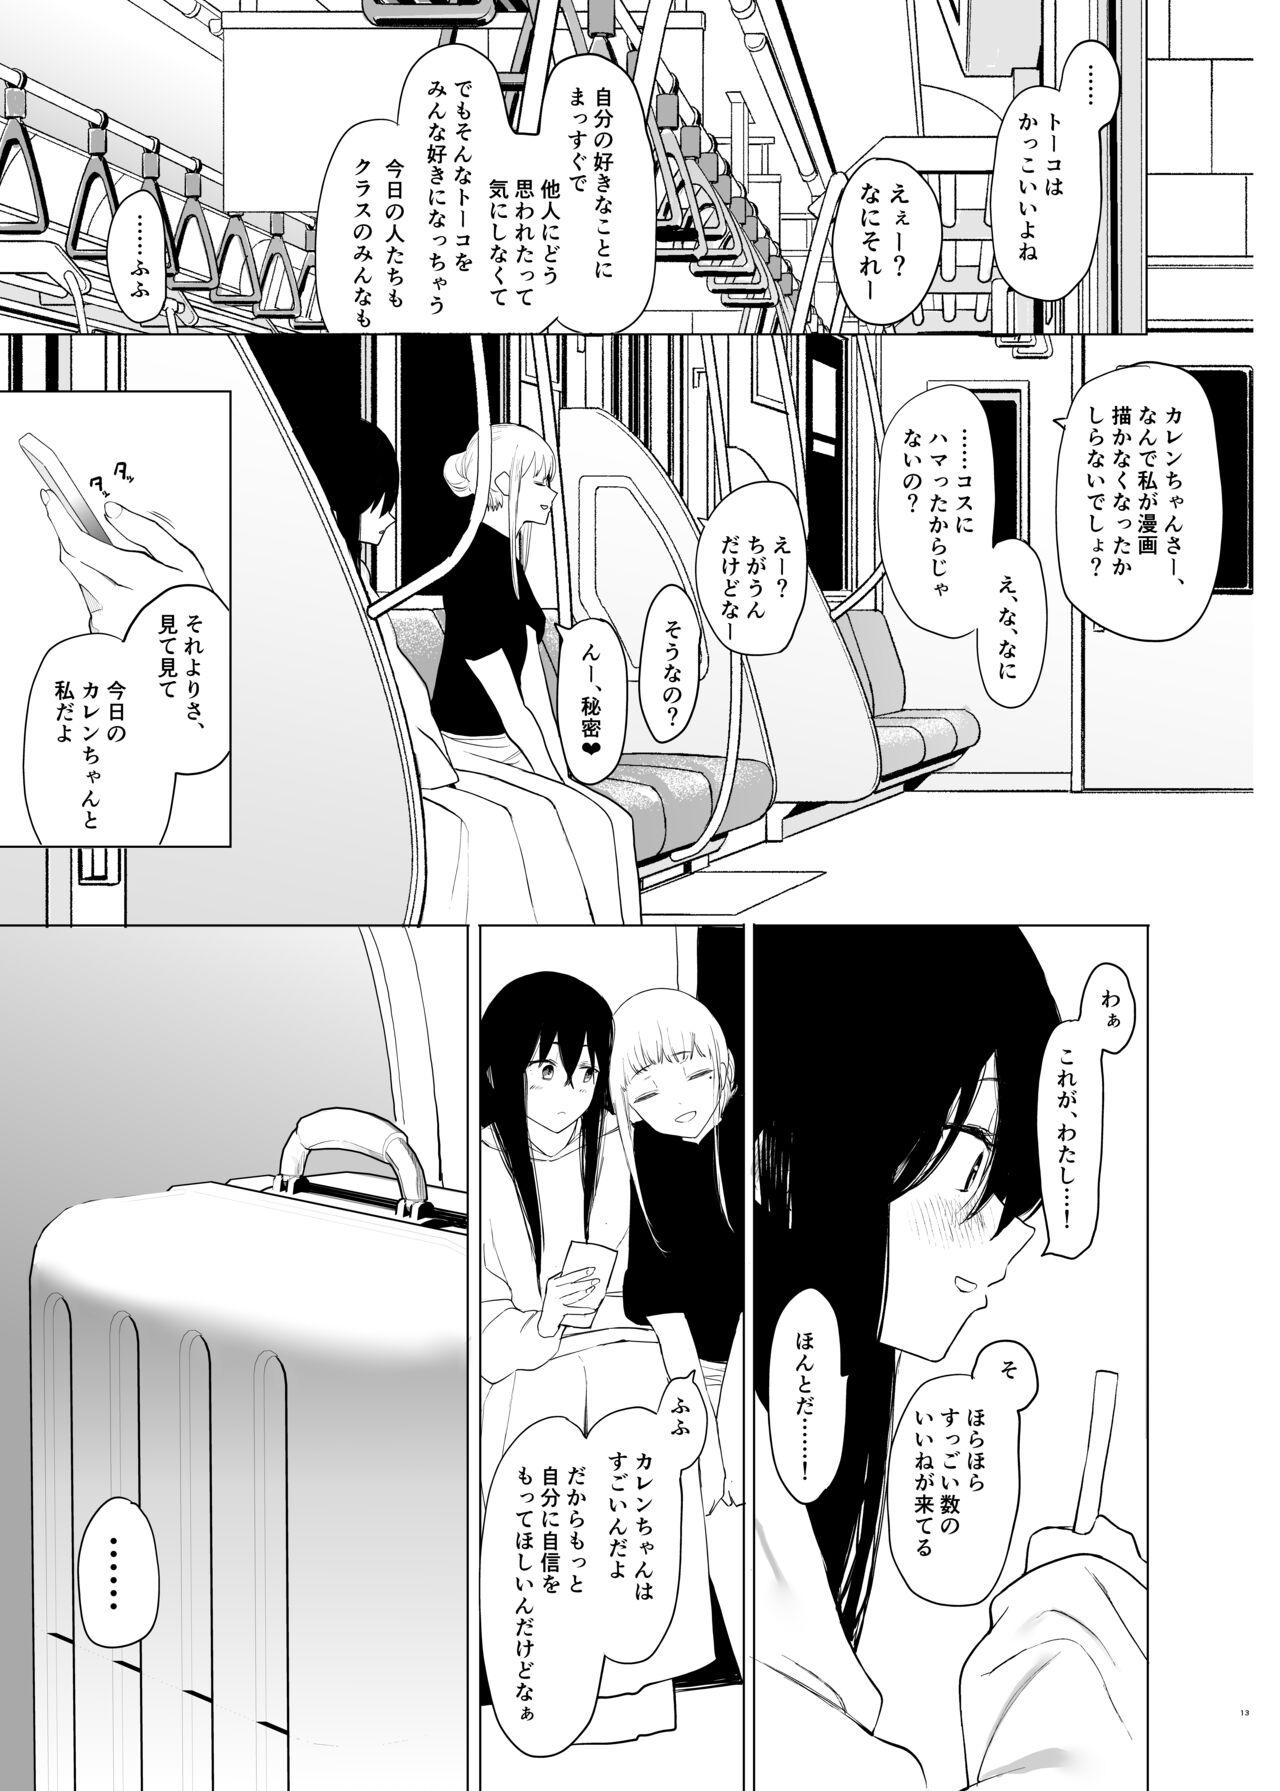 Insertion 唯雌‐タダノオンナノコ‐ - Original Uniform - Page 12